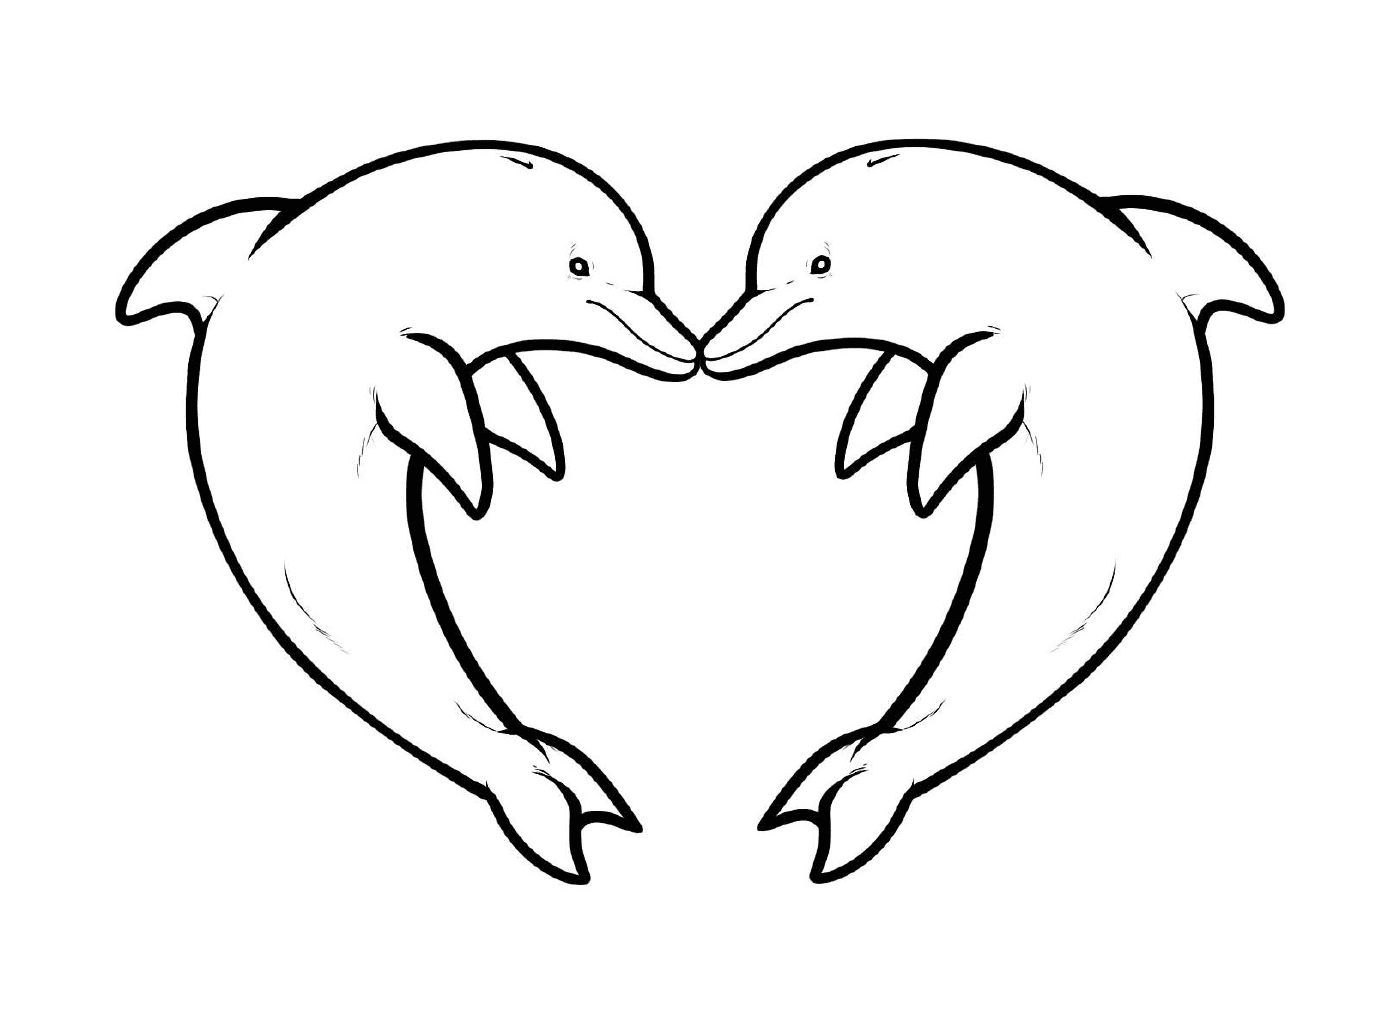  Dos delfines formando un corazón 